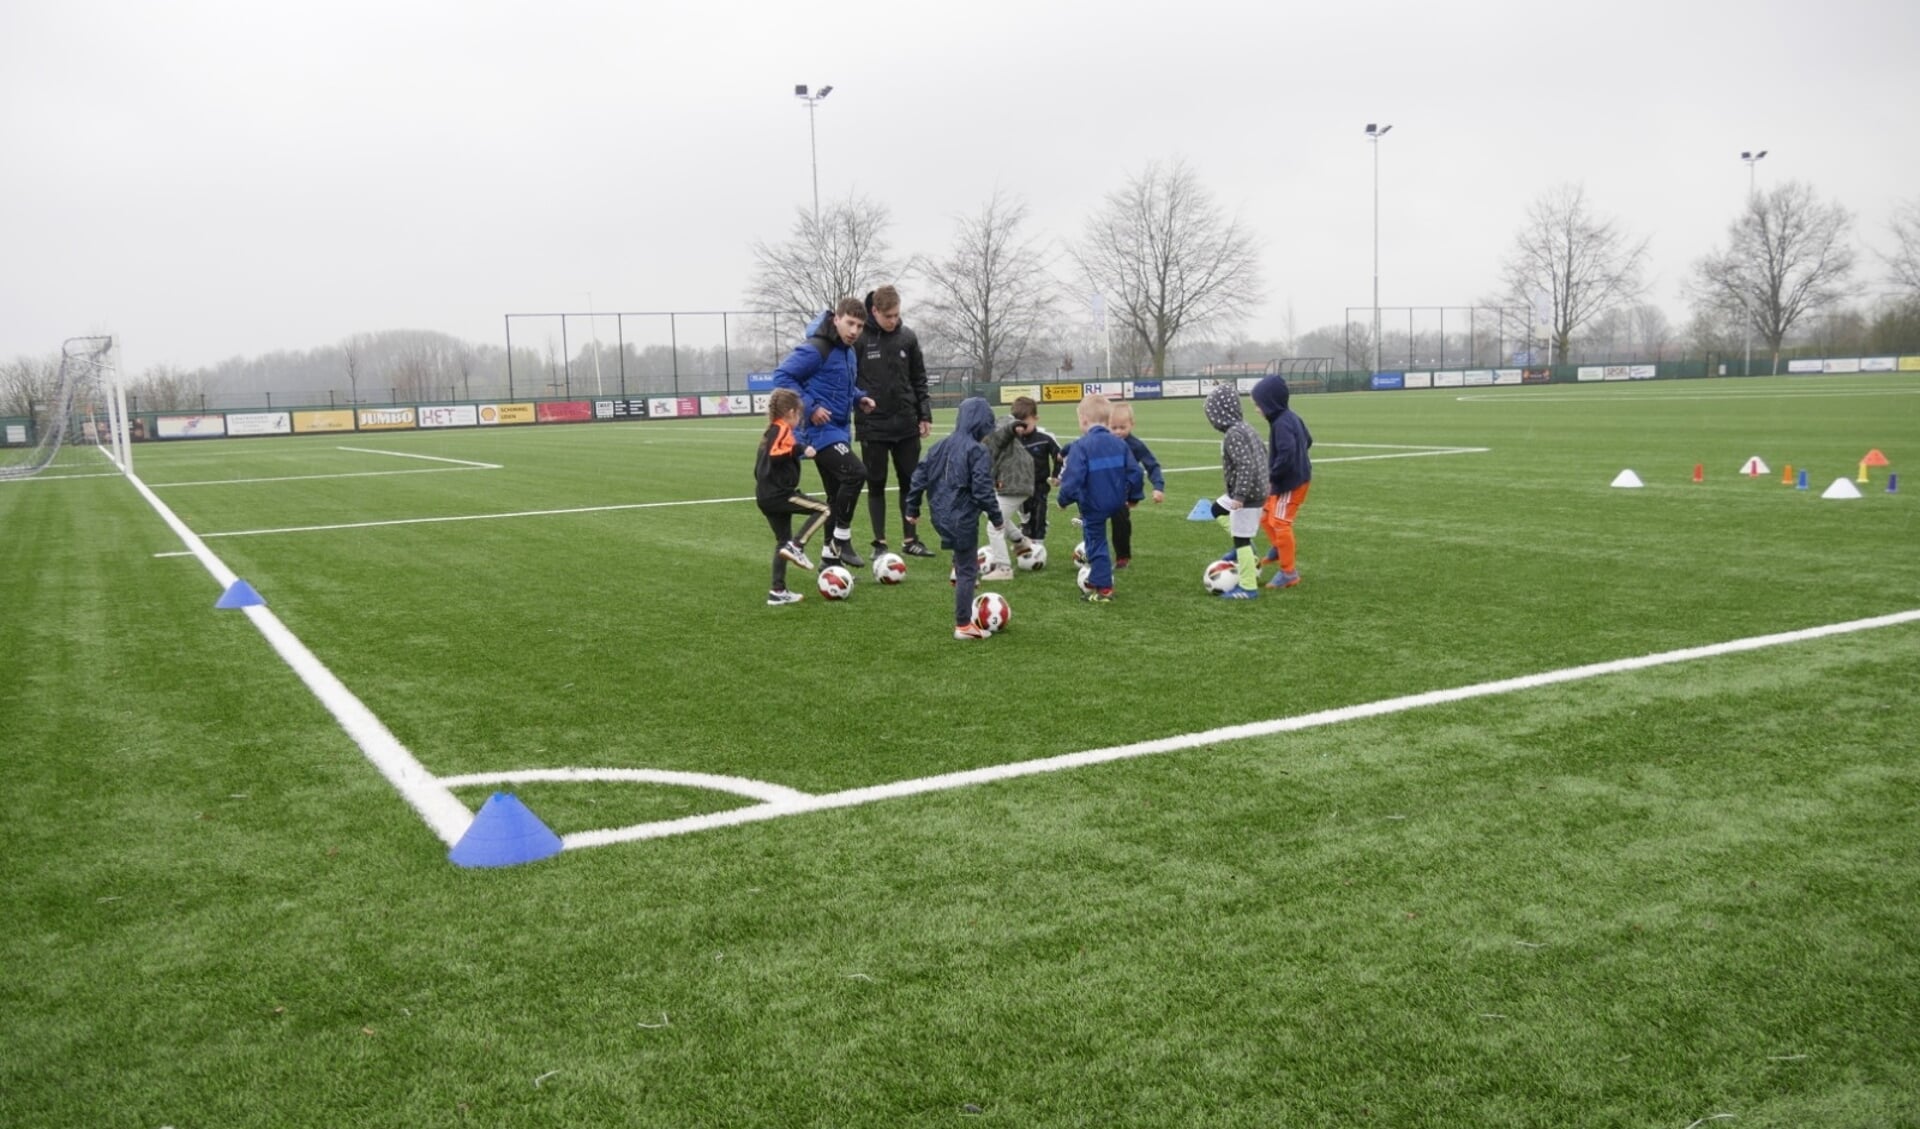 Rakkiebal, nieuw spelaanbod voor 5- en 6-jarigen bij FC de Rakt in Uden.